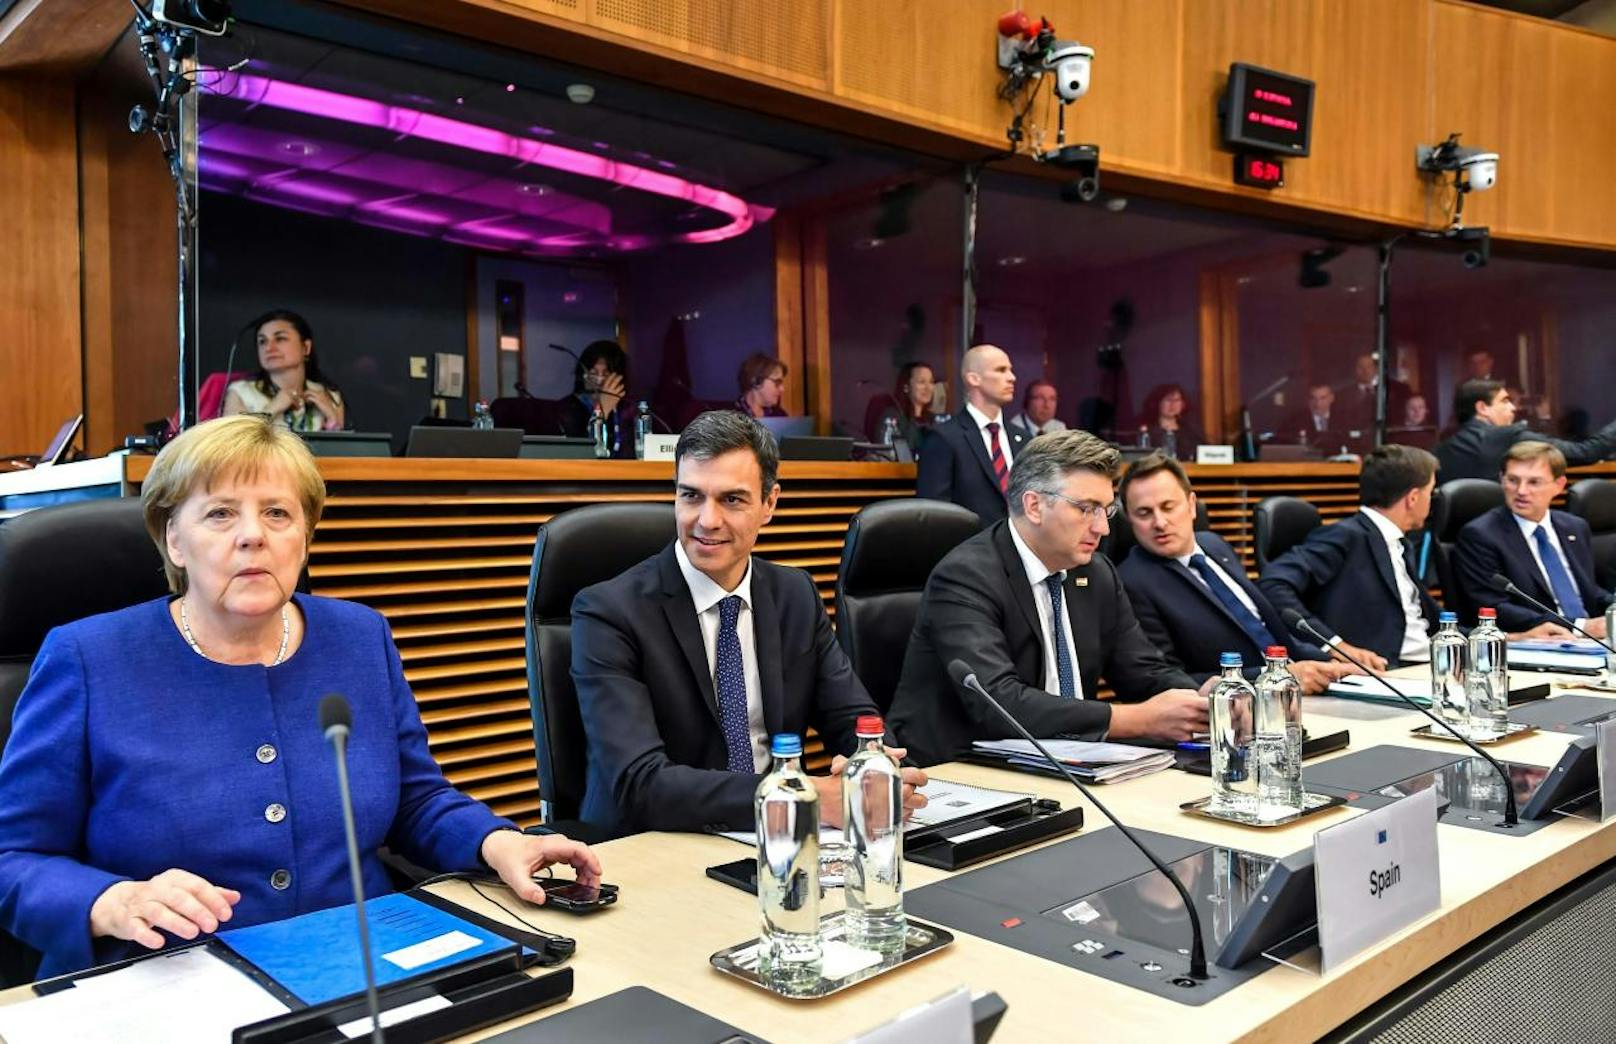 v.n.l.r.: Die deutsche Kanzlerin <b>Angela Merkel</b> und die Premiers <b>Pedro Sanchez</b> (Spanien), <b>Andrej Plenkovi </b>(Kroatien), <b>Xavier Bettel </b>(Luxemburg),<b> Mark Rutte</b> (Niederlande) und <b>Miro Cerar</b> (Slowenien) beim Asylgipfel in Brüssel am 24. Juni 2018.